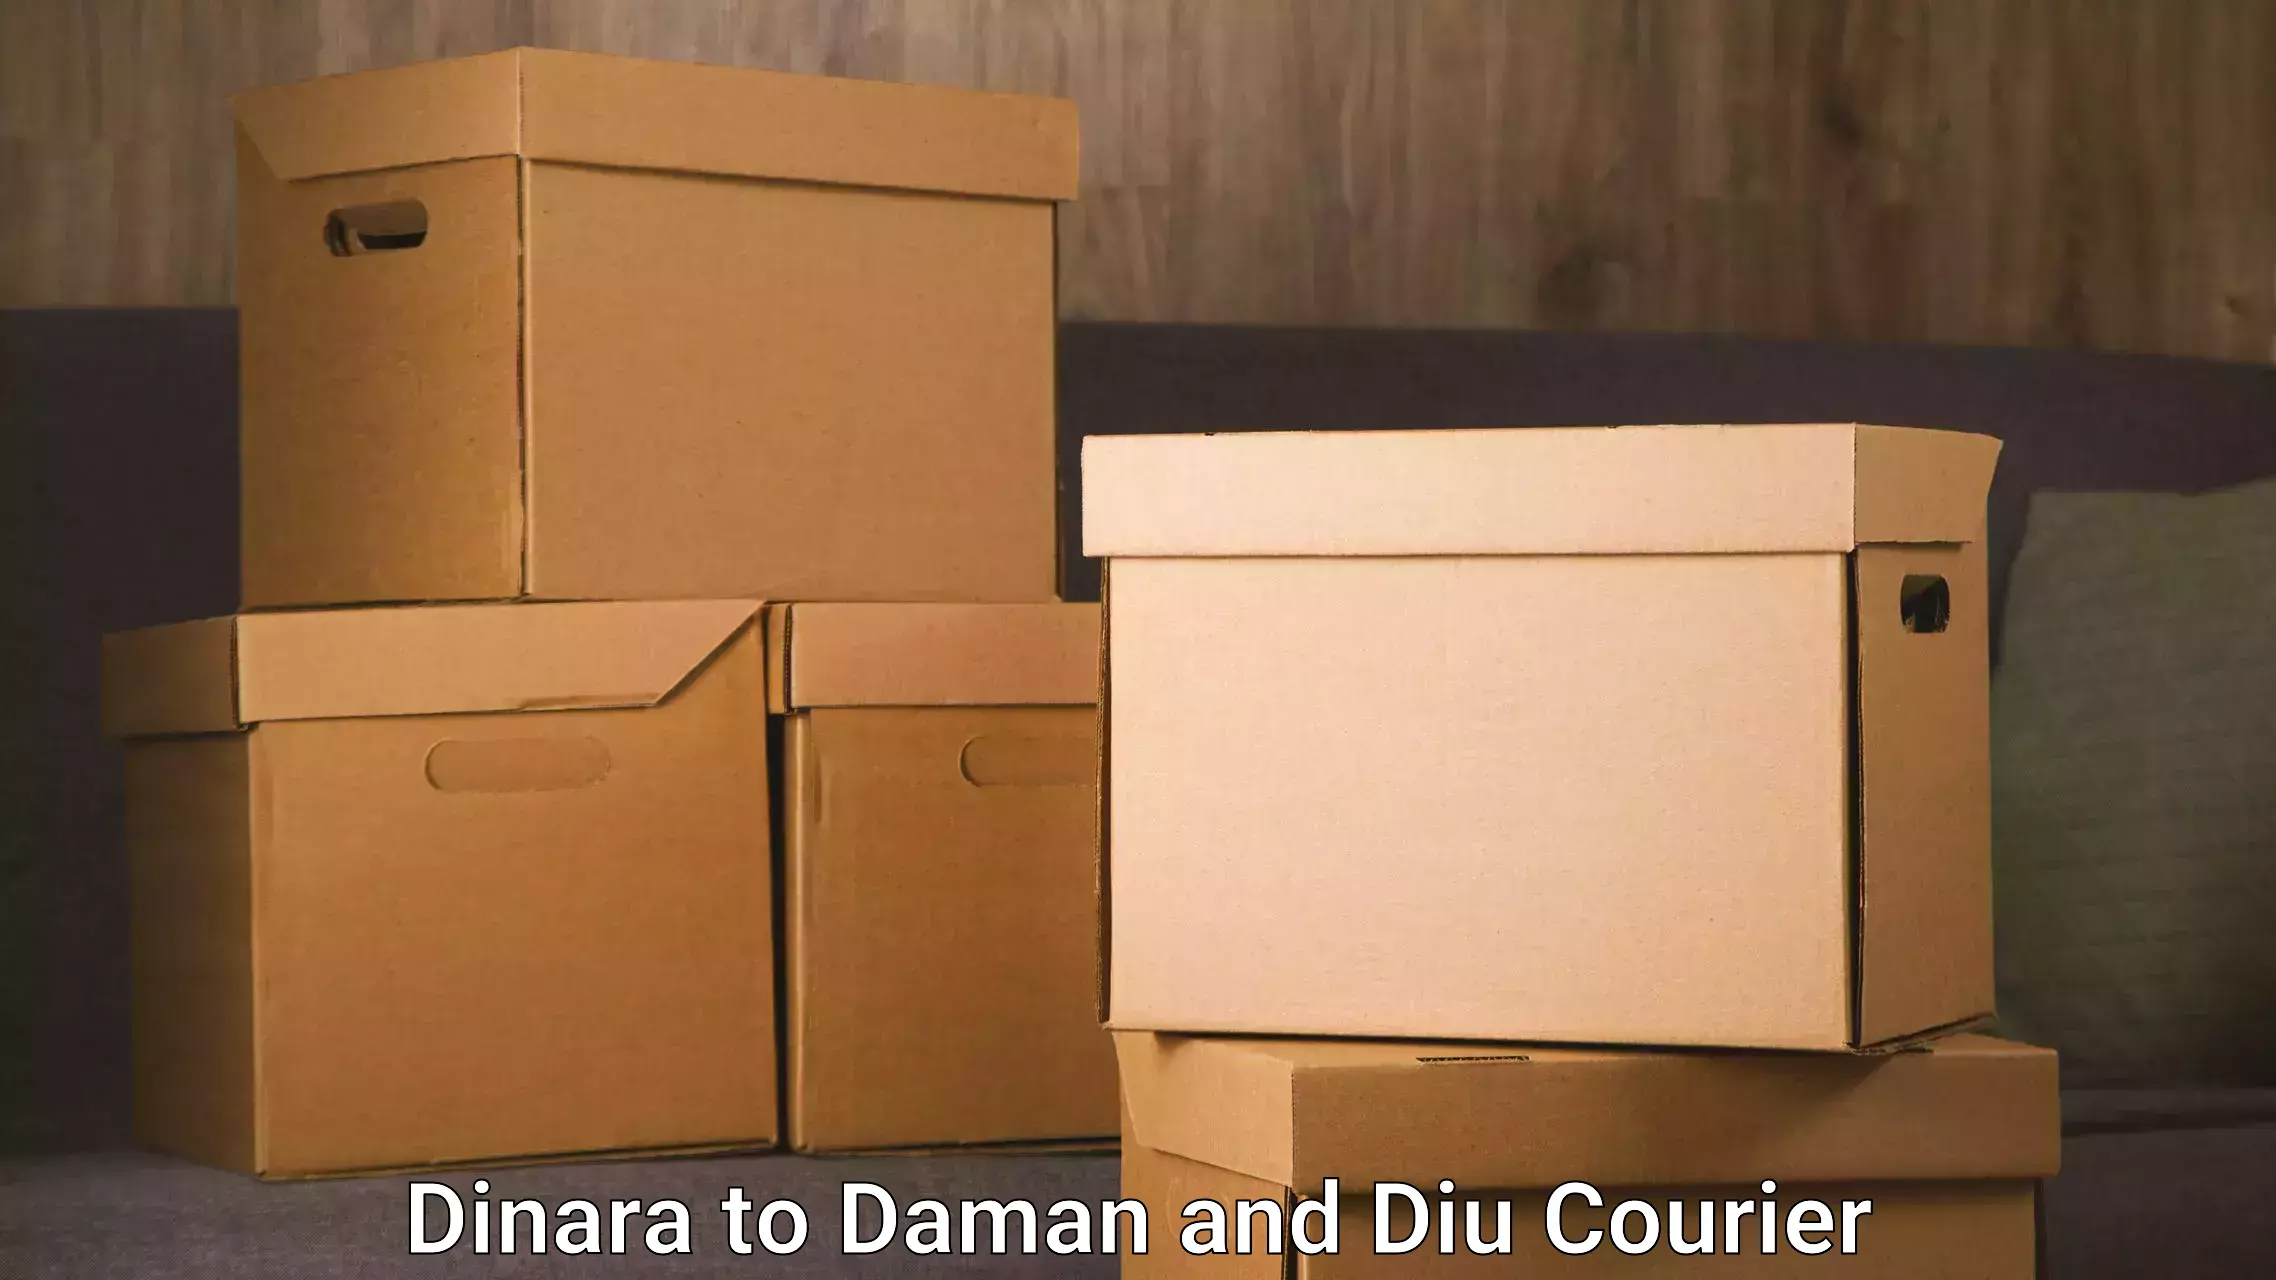 Furniture moving assistance in Dinara to Diu